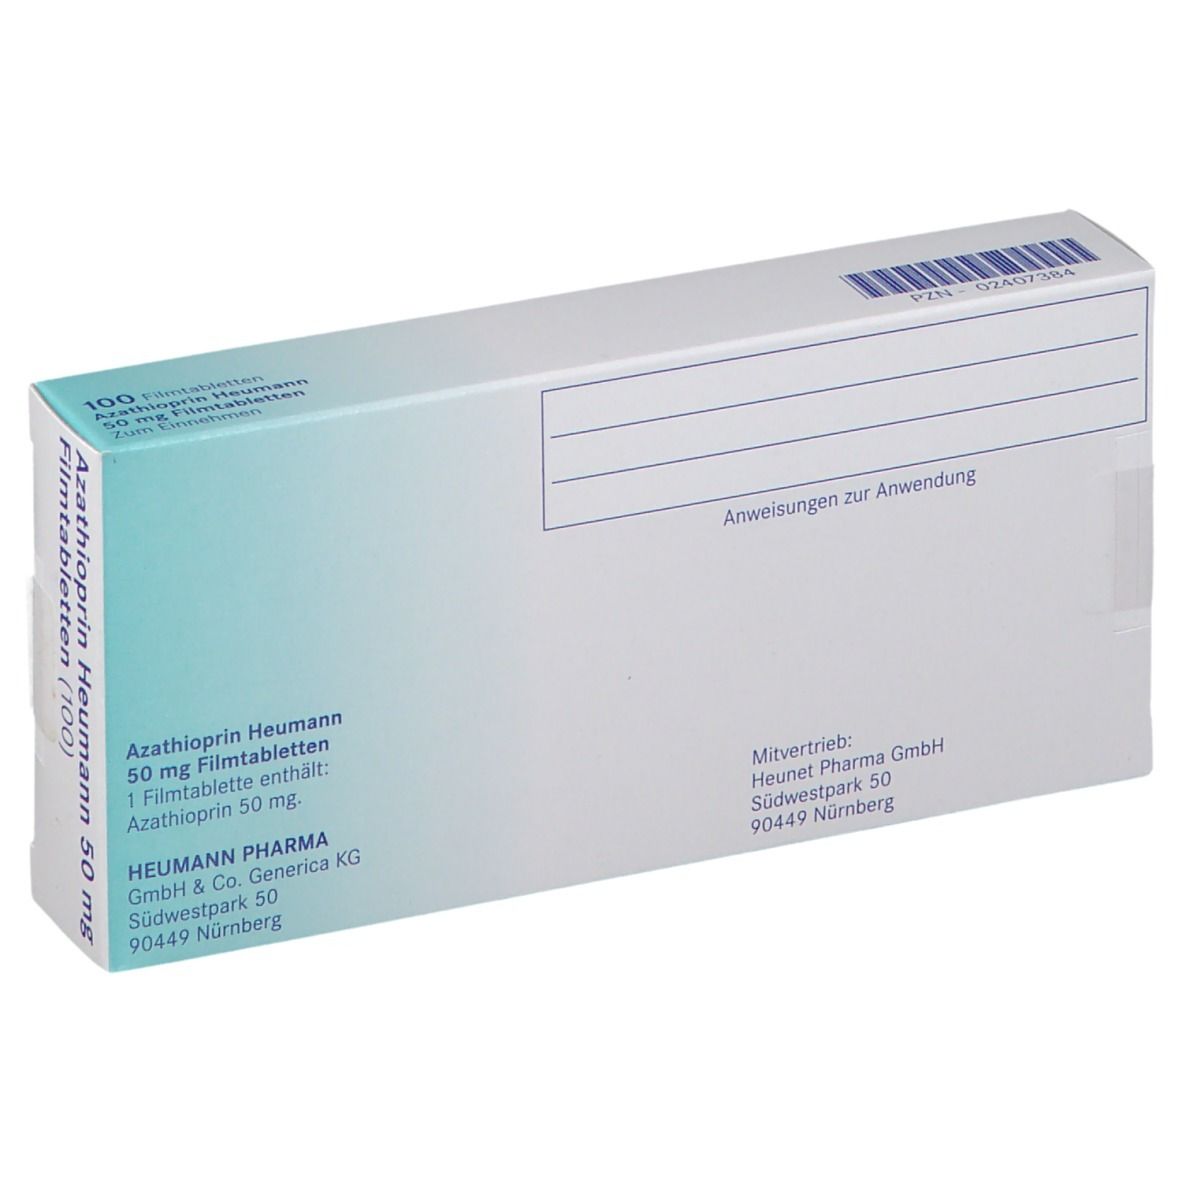 Azathioprin Heumann 50 mg